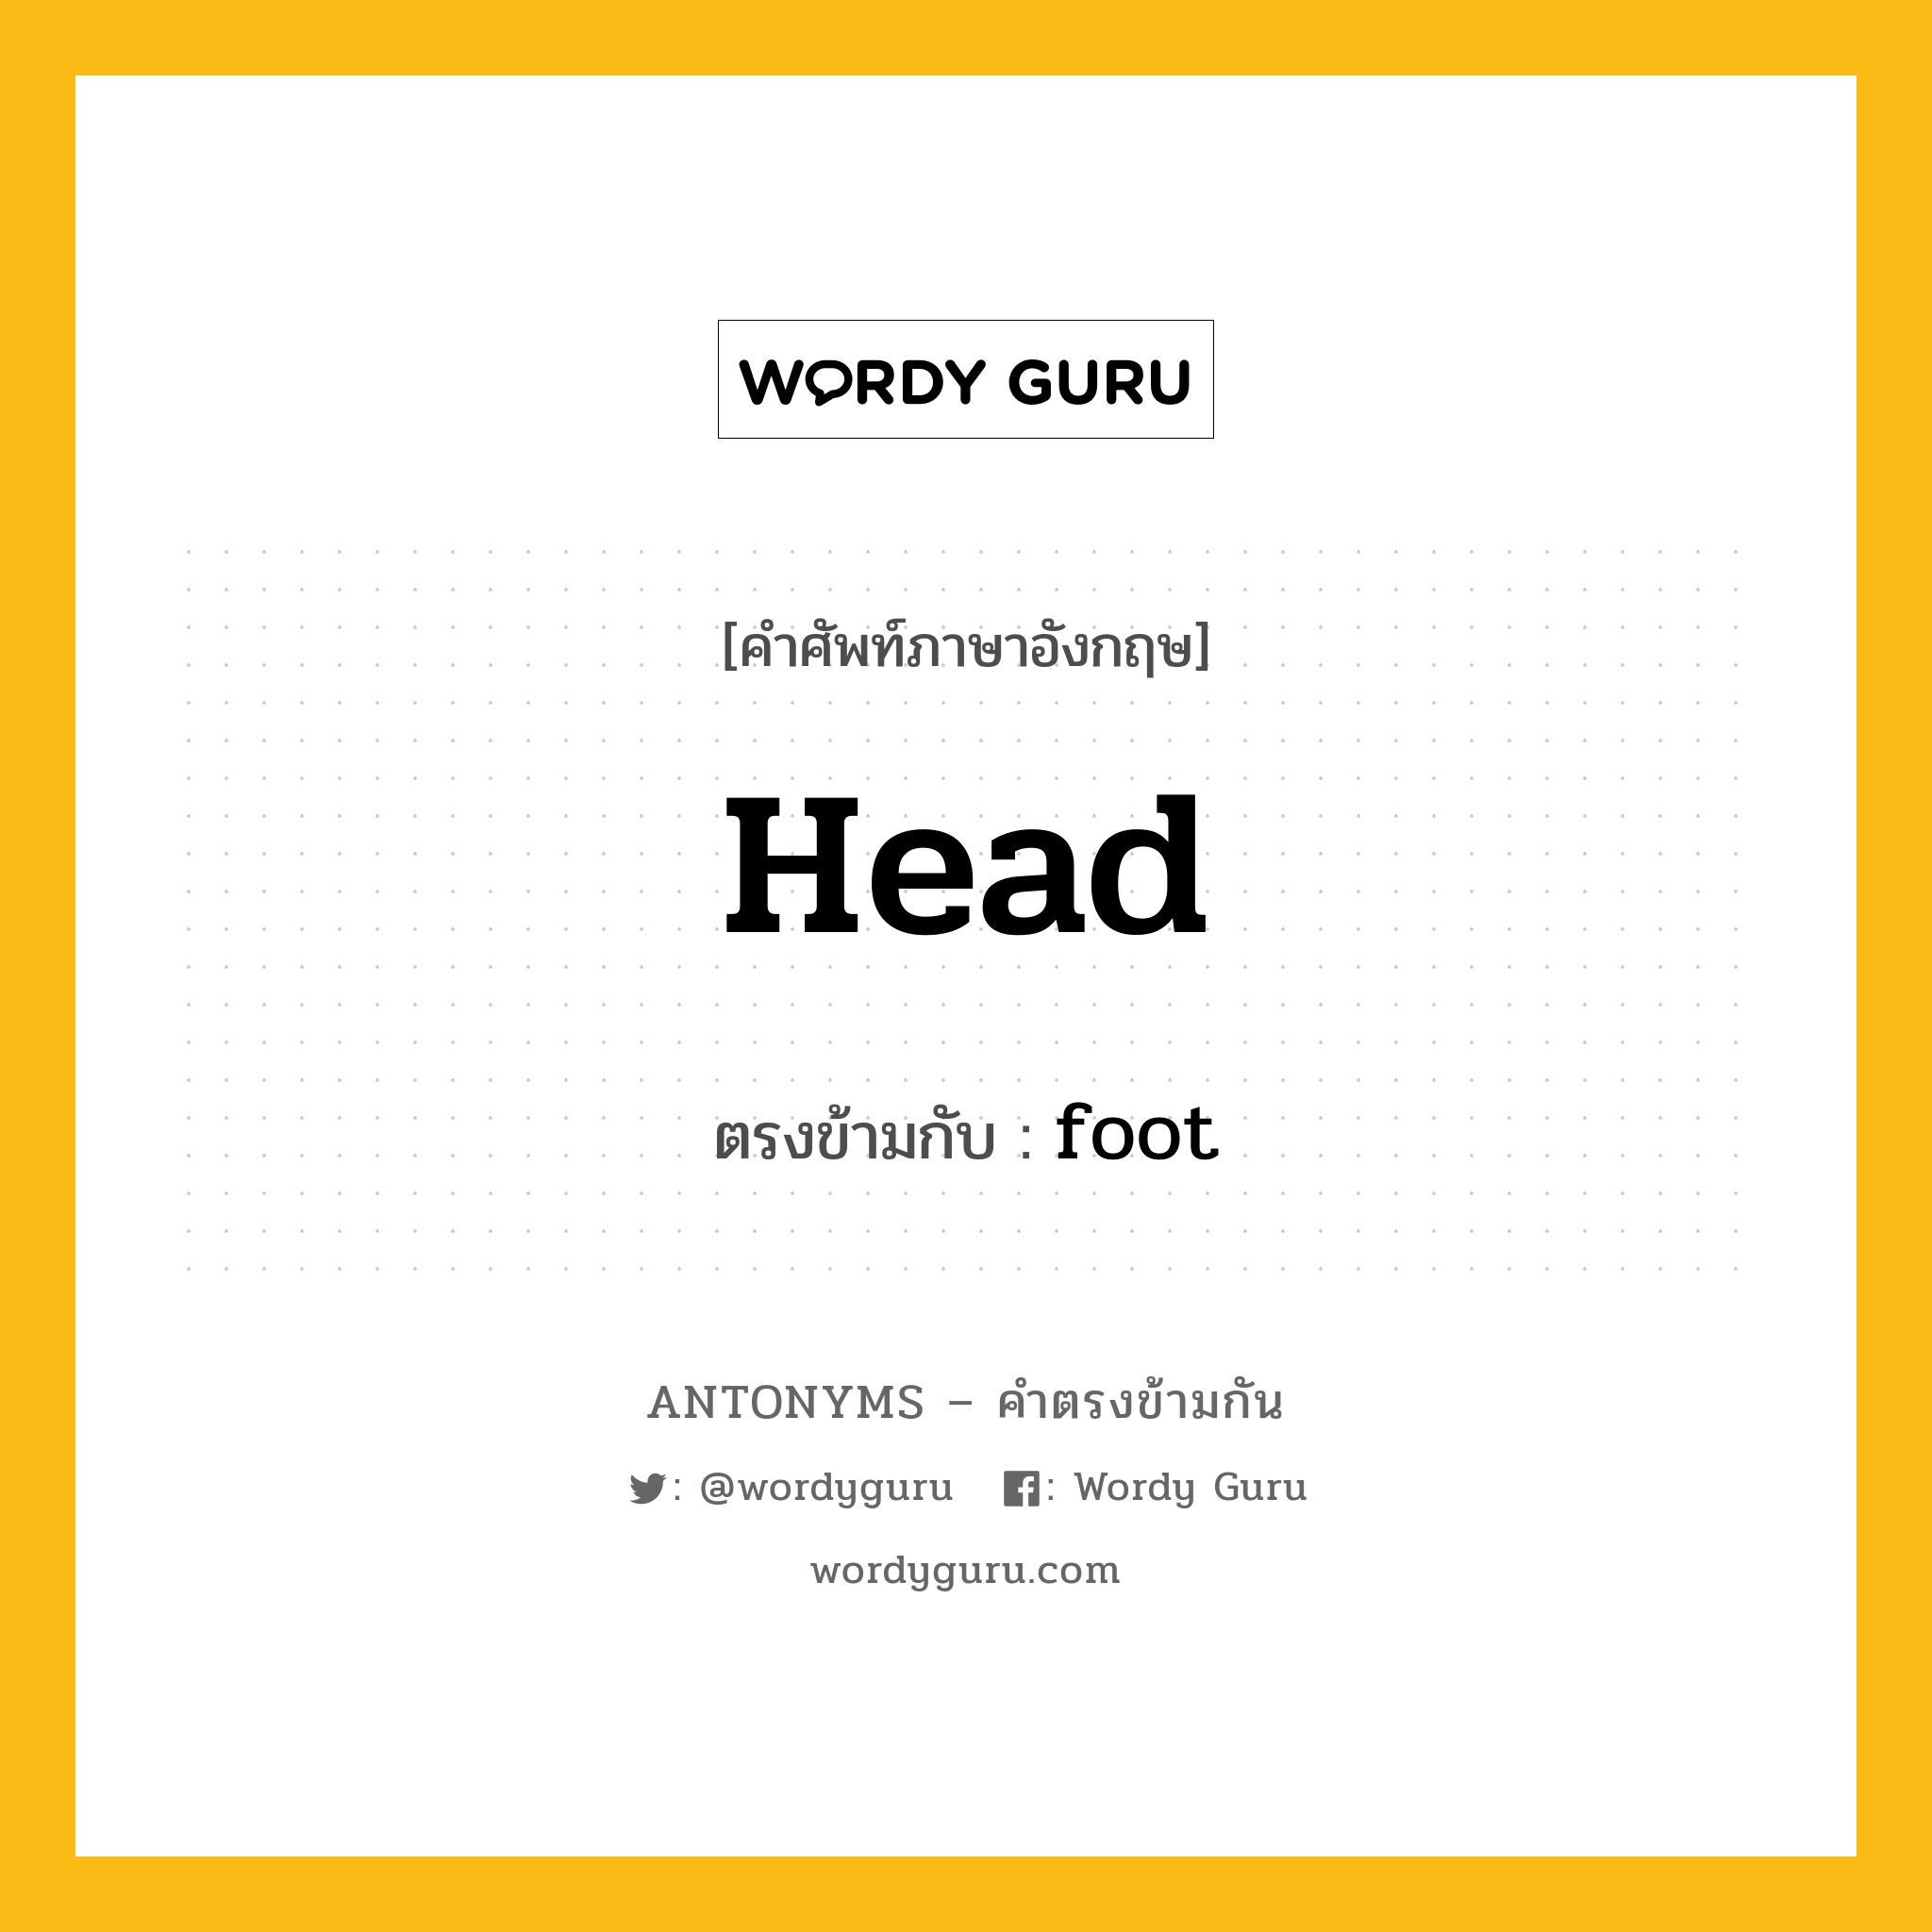 head เป็นคำตรงข้ามกับคำไหนบ้าง?, คำศัพท์ภาษาอังกฤษ head ตรงข้ามกับ foot หมวด foot